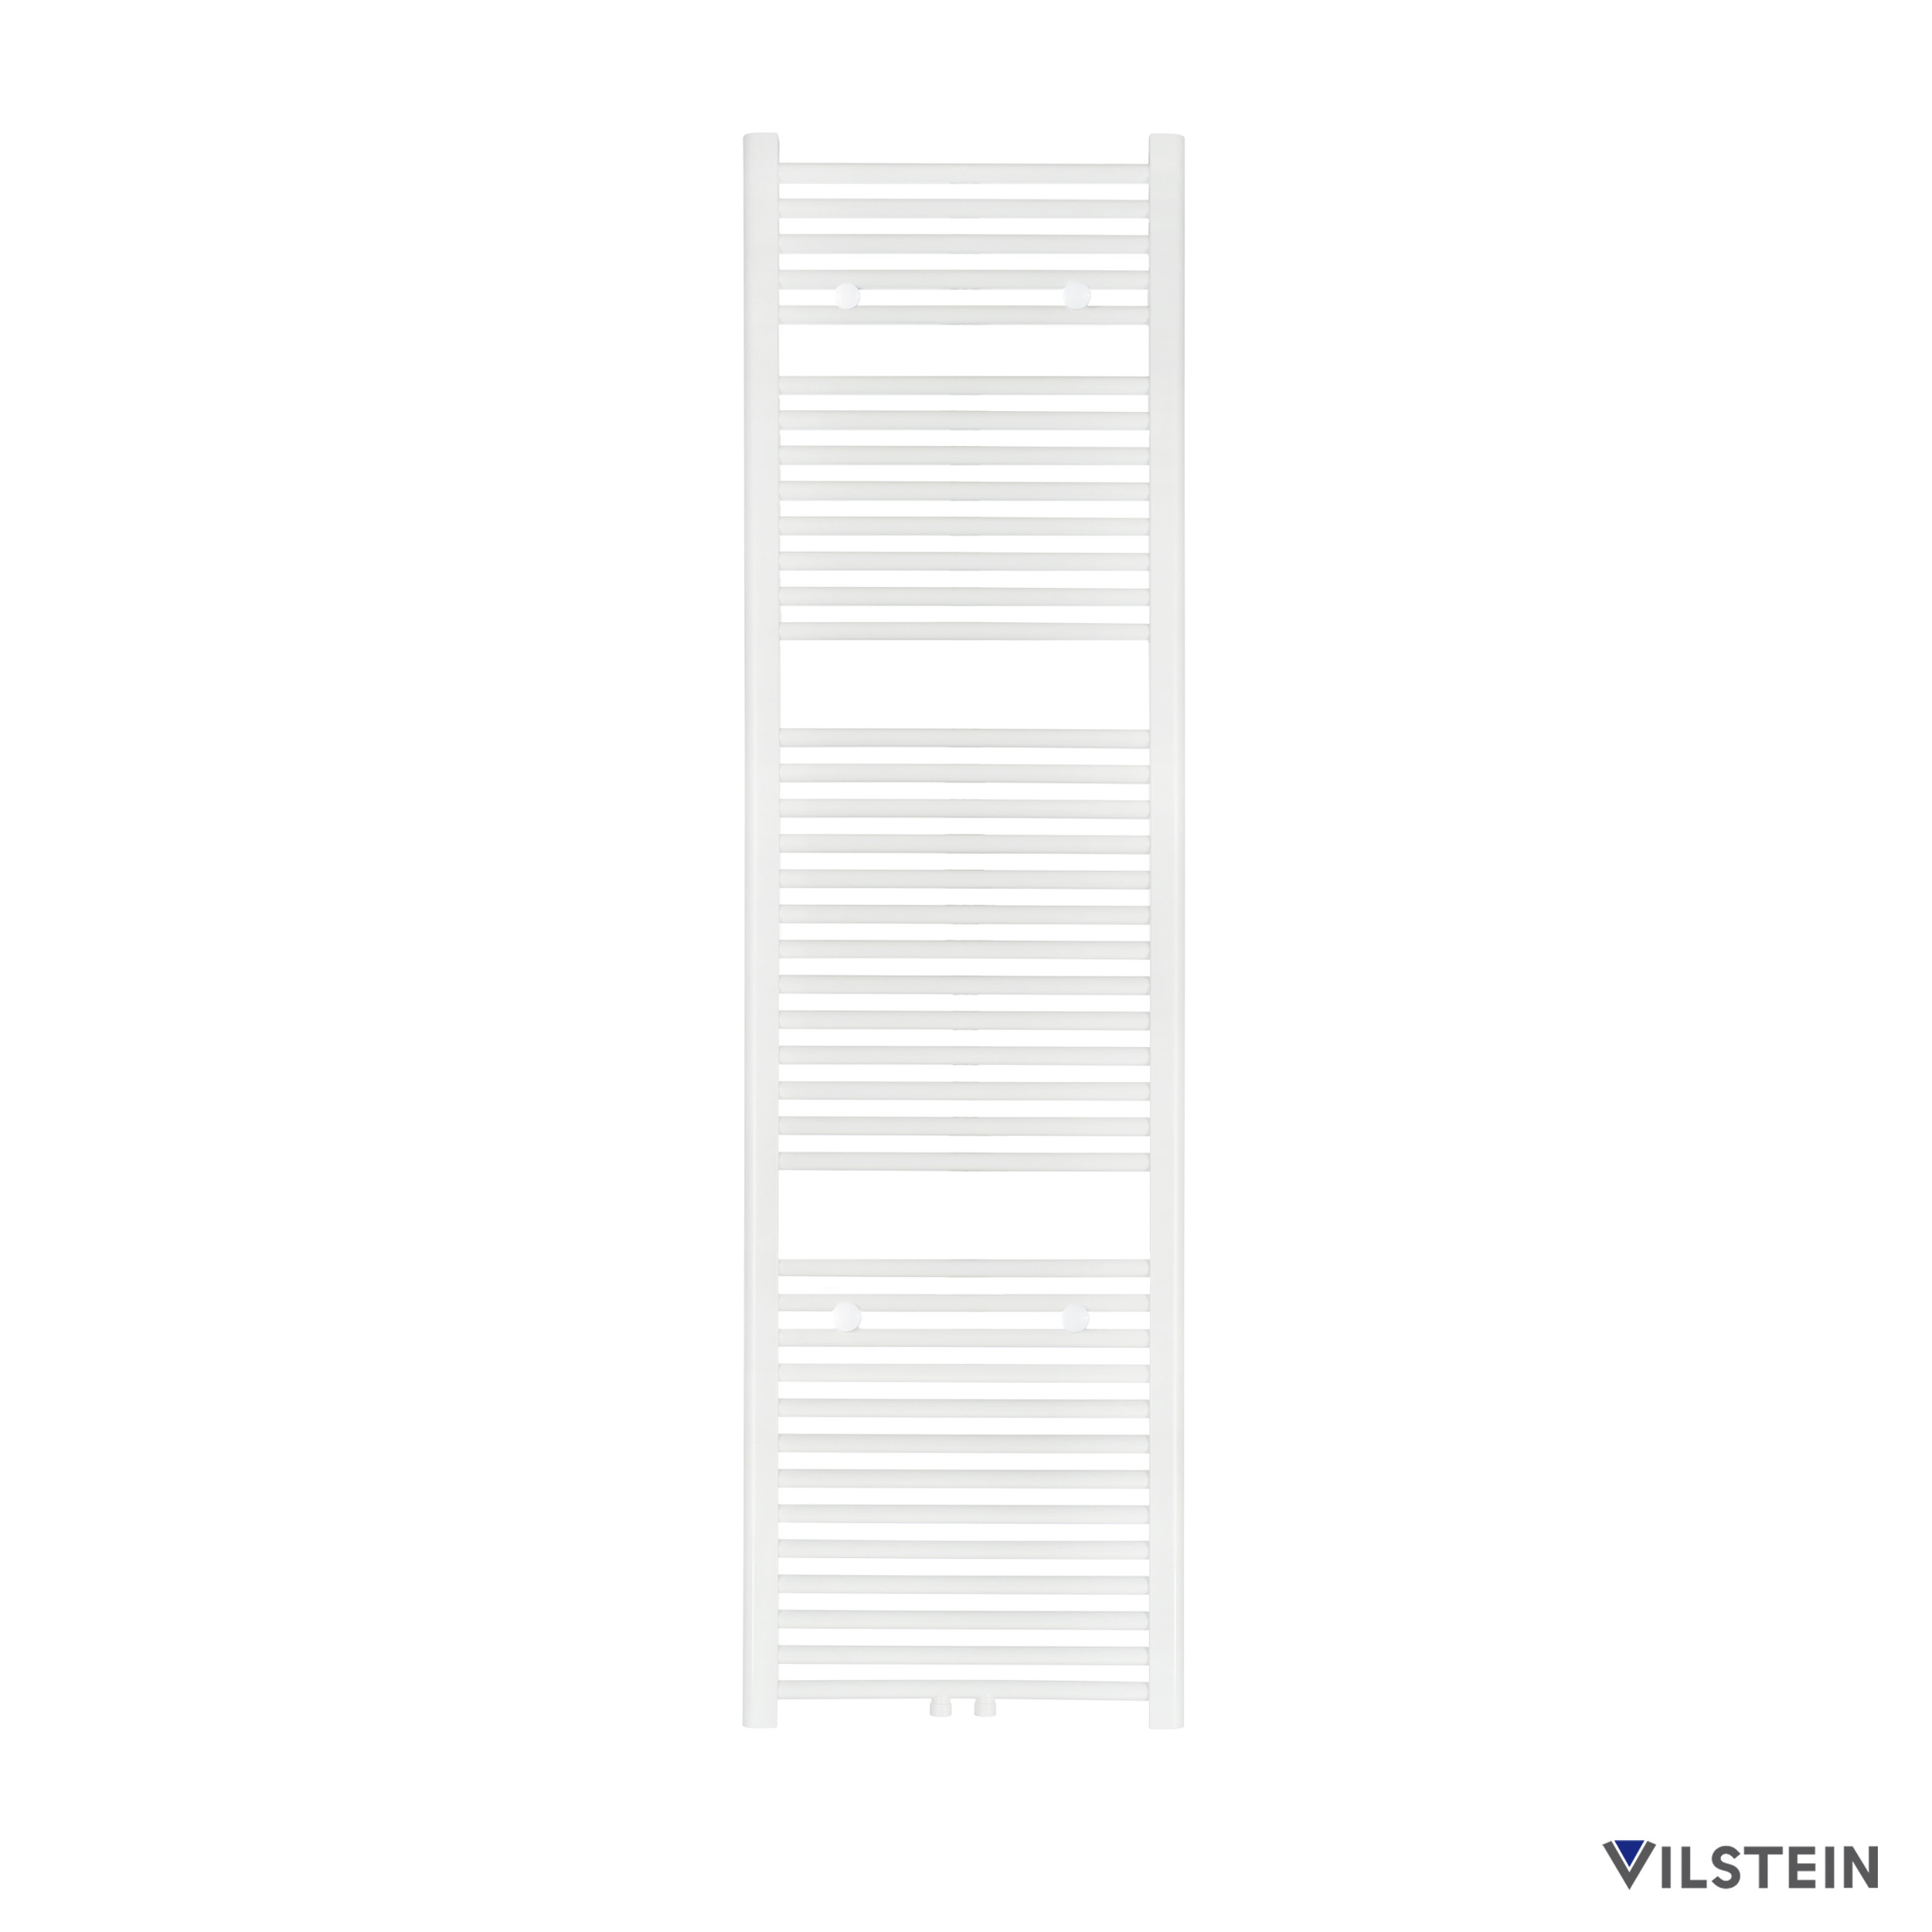 VILSTEIN Badheizkörper - 1800x500 mm - Weiß